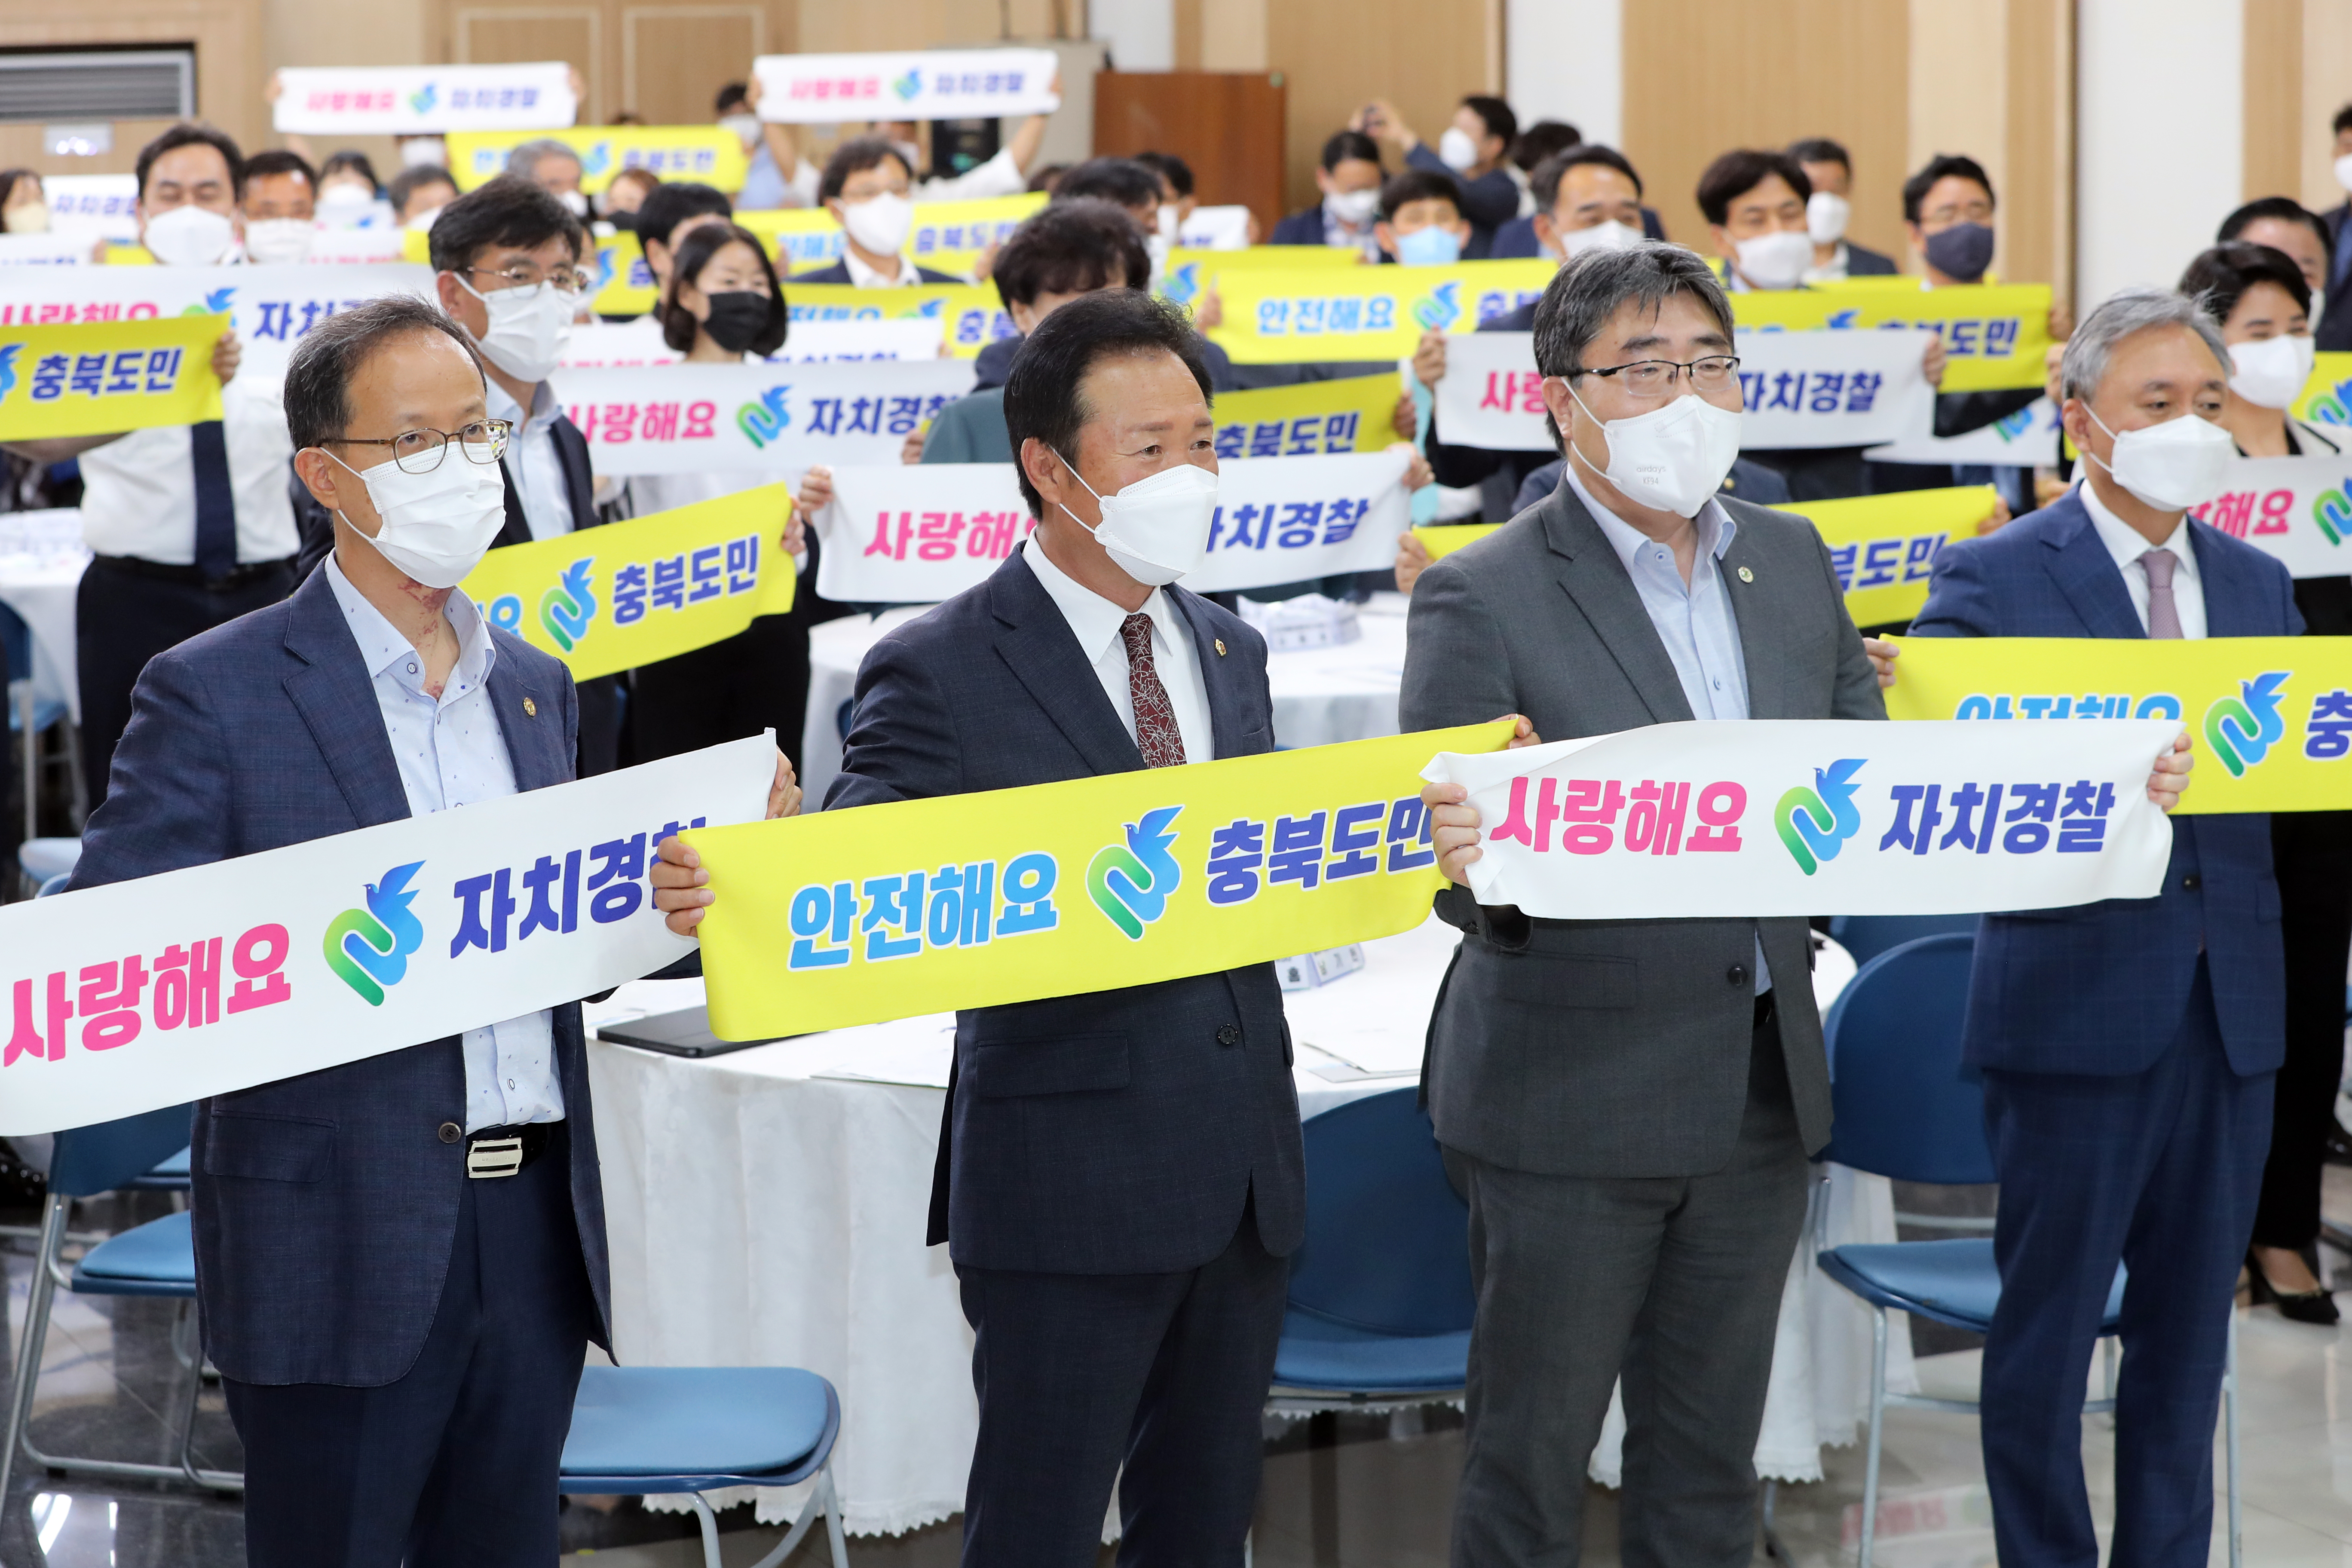 20220727 - 충청북도자치경찰위원회 출범 1주년 기념식(도청 대회의실)